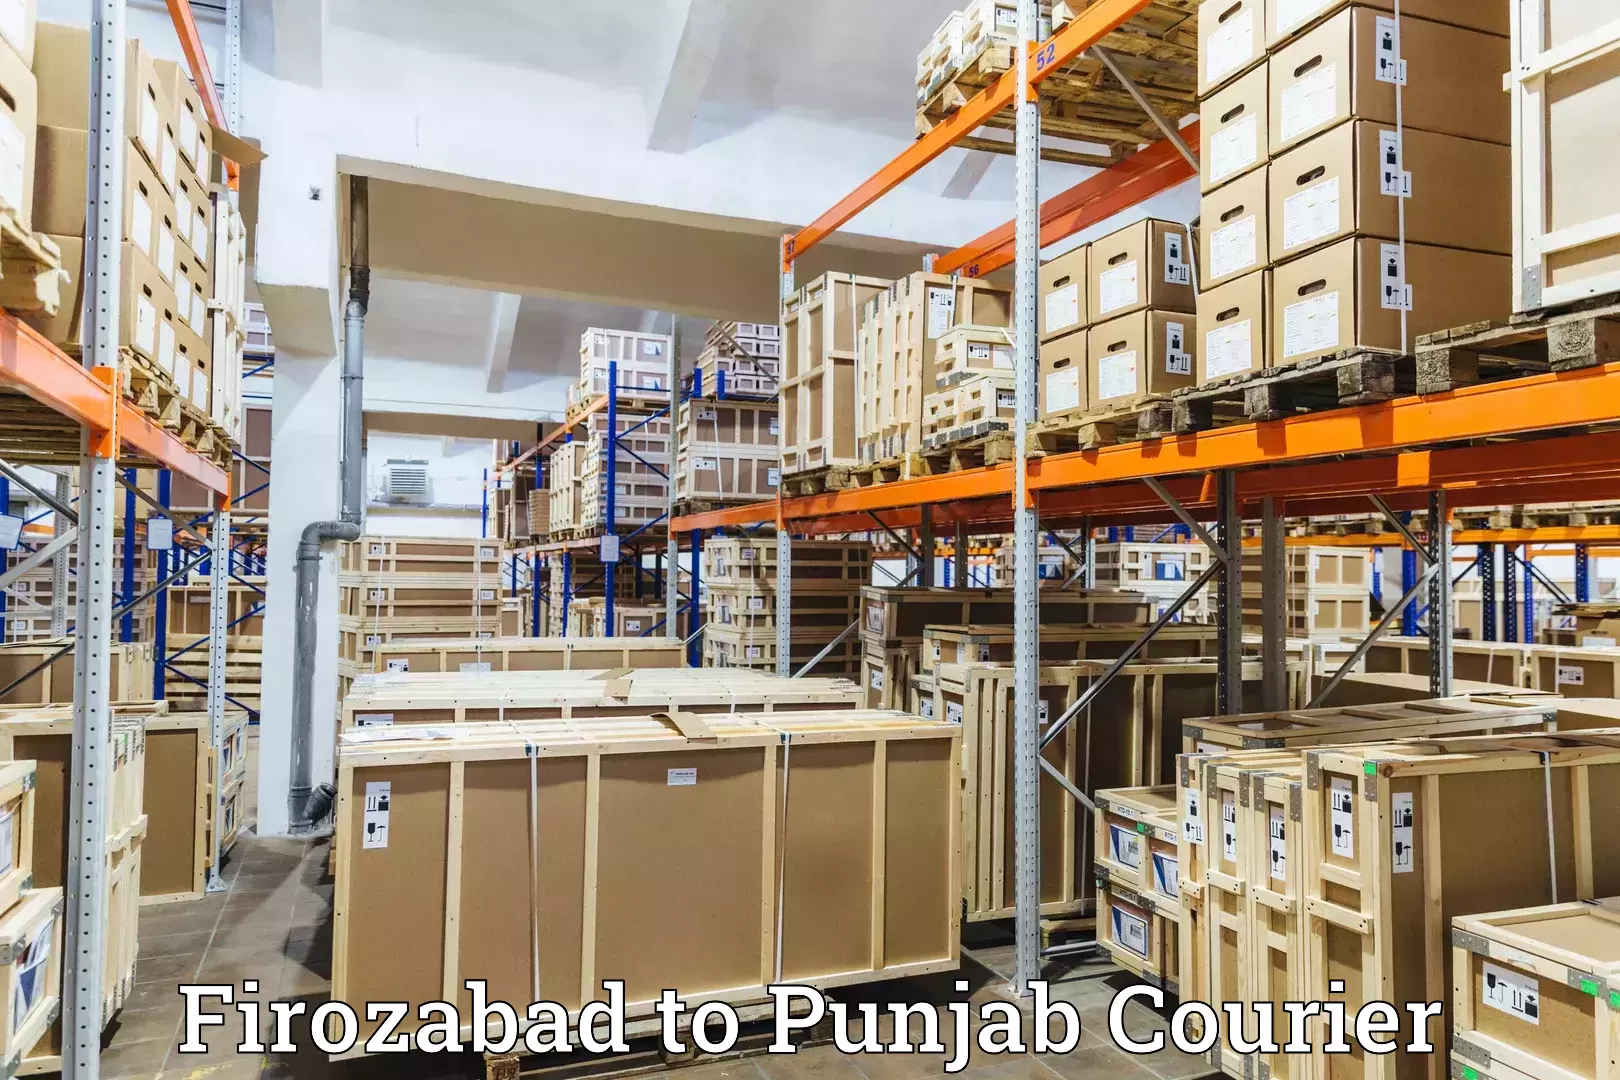 High-speed parcel service Firozabad to Ajnala